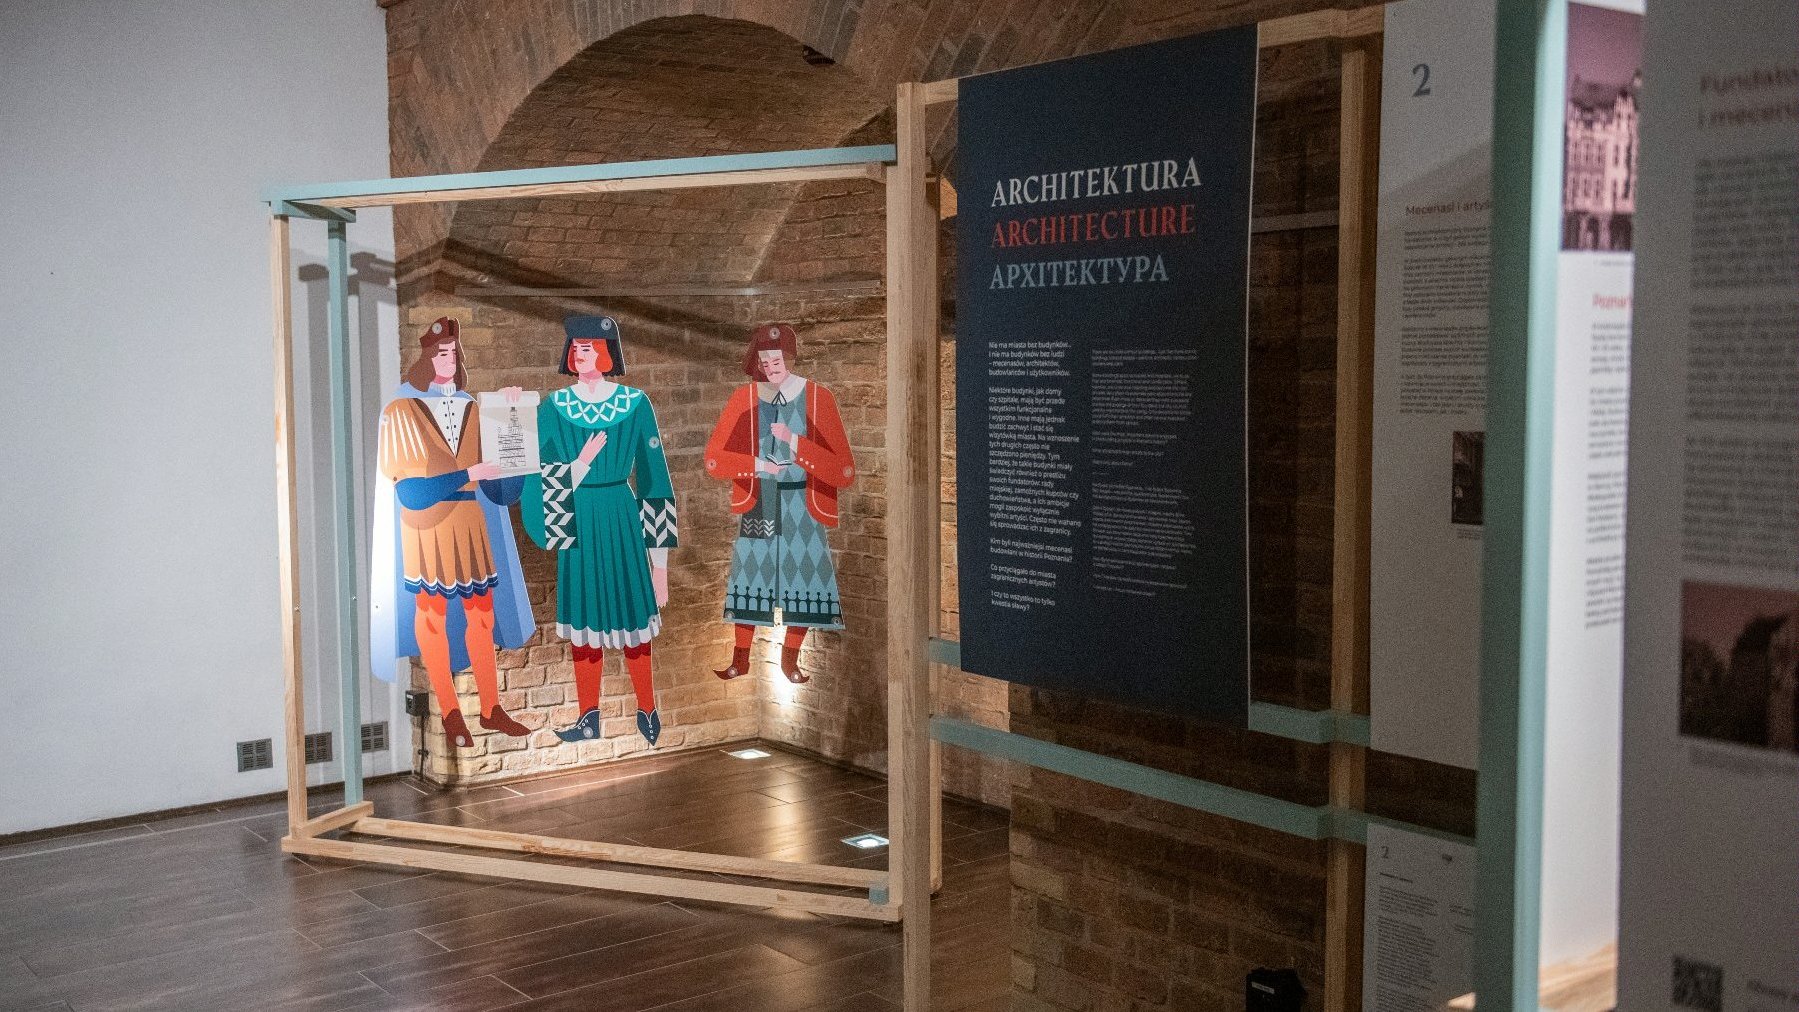 Część ekspozycji poświęcona architekturze. Drewniane sylwetki trzech ludzi w dawnych strojach podwieszone w ramie, obok tablica z tekstem.